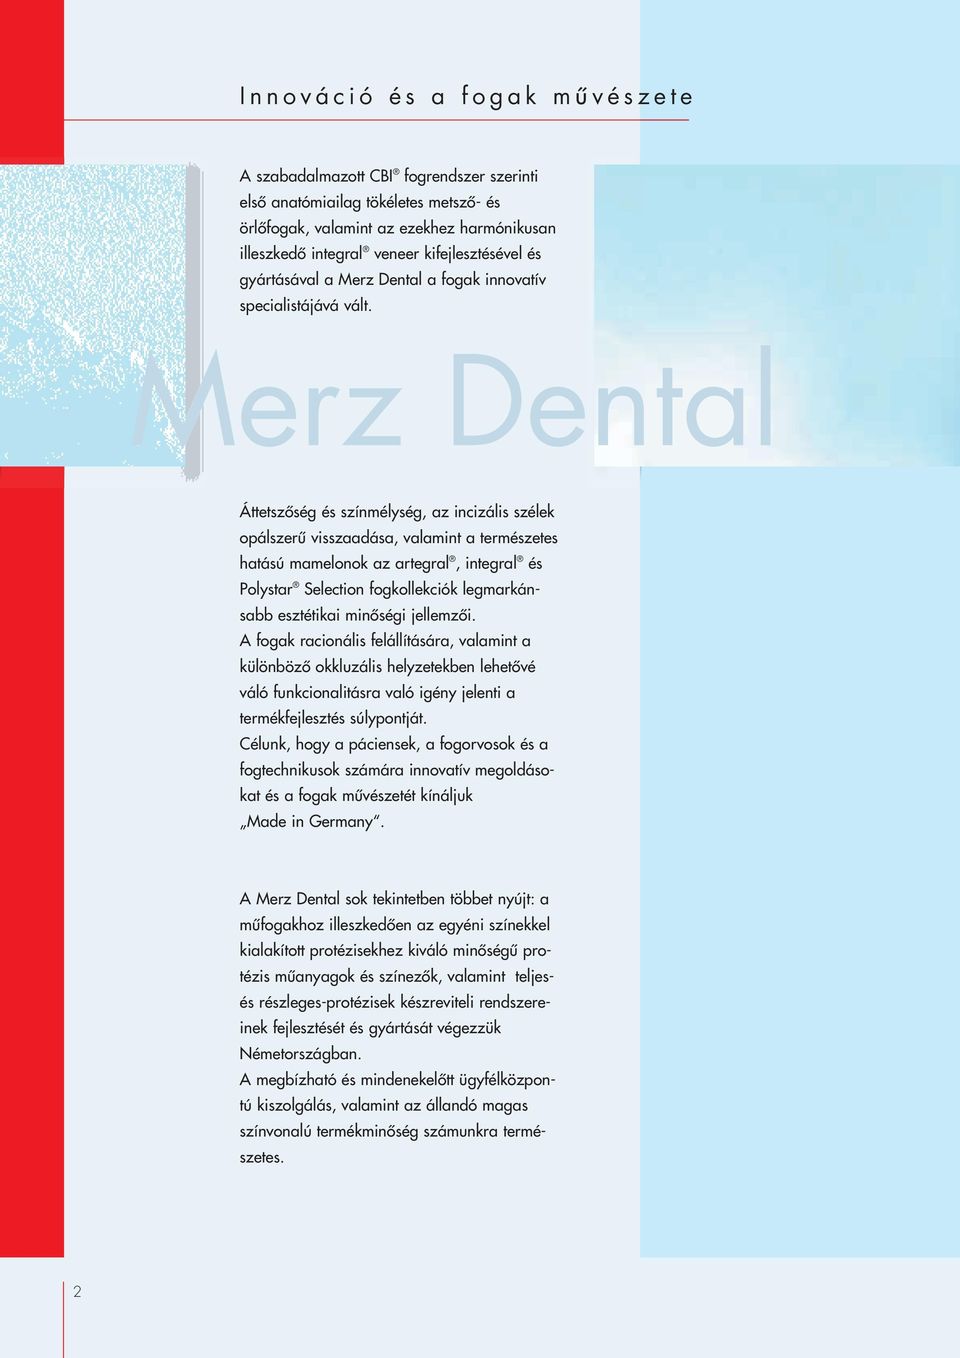 rz Dental ÁttetszŒség és színmélység, az incizális szélek opálszerı visszaadása, valamint atermészetes hatású mamelonok az artegral,integral és Polystar Selection fogkollekciók legmarkánsabb